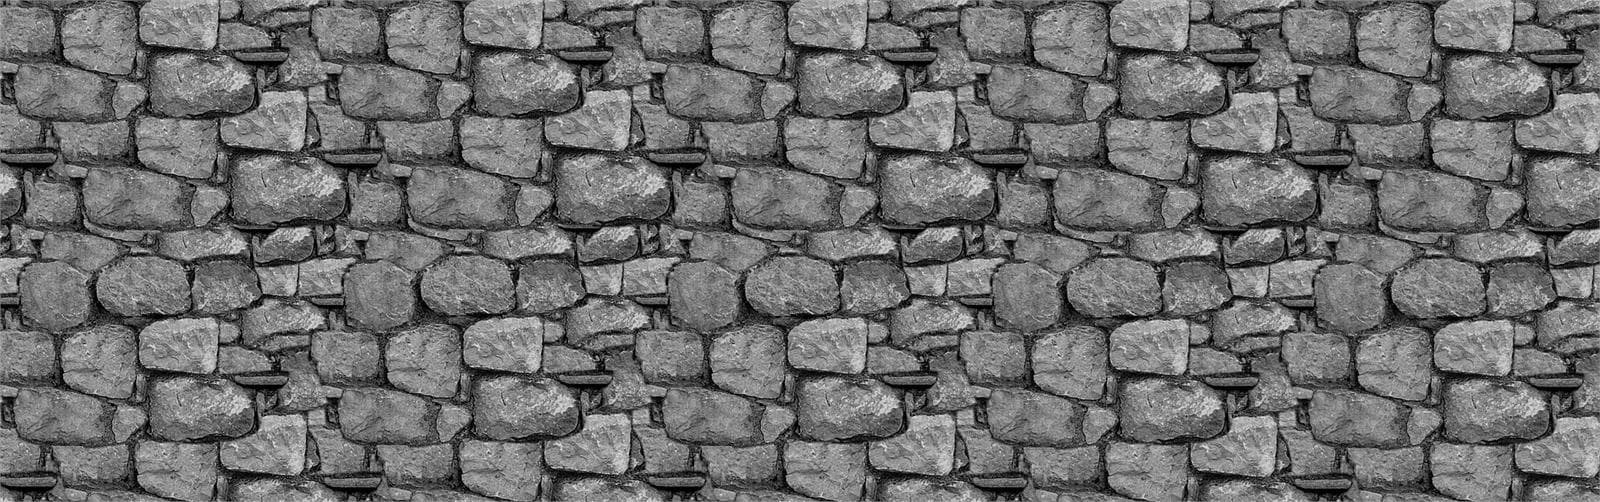 Los muros de escollera como módulos de construcción - Imagen 1